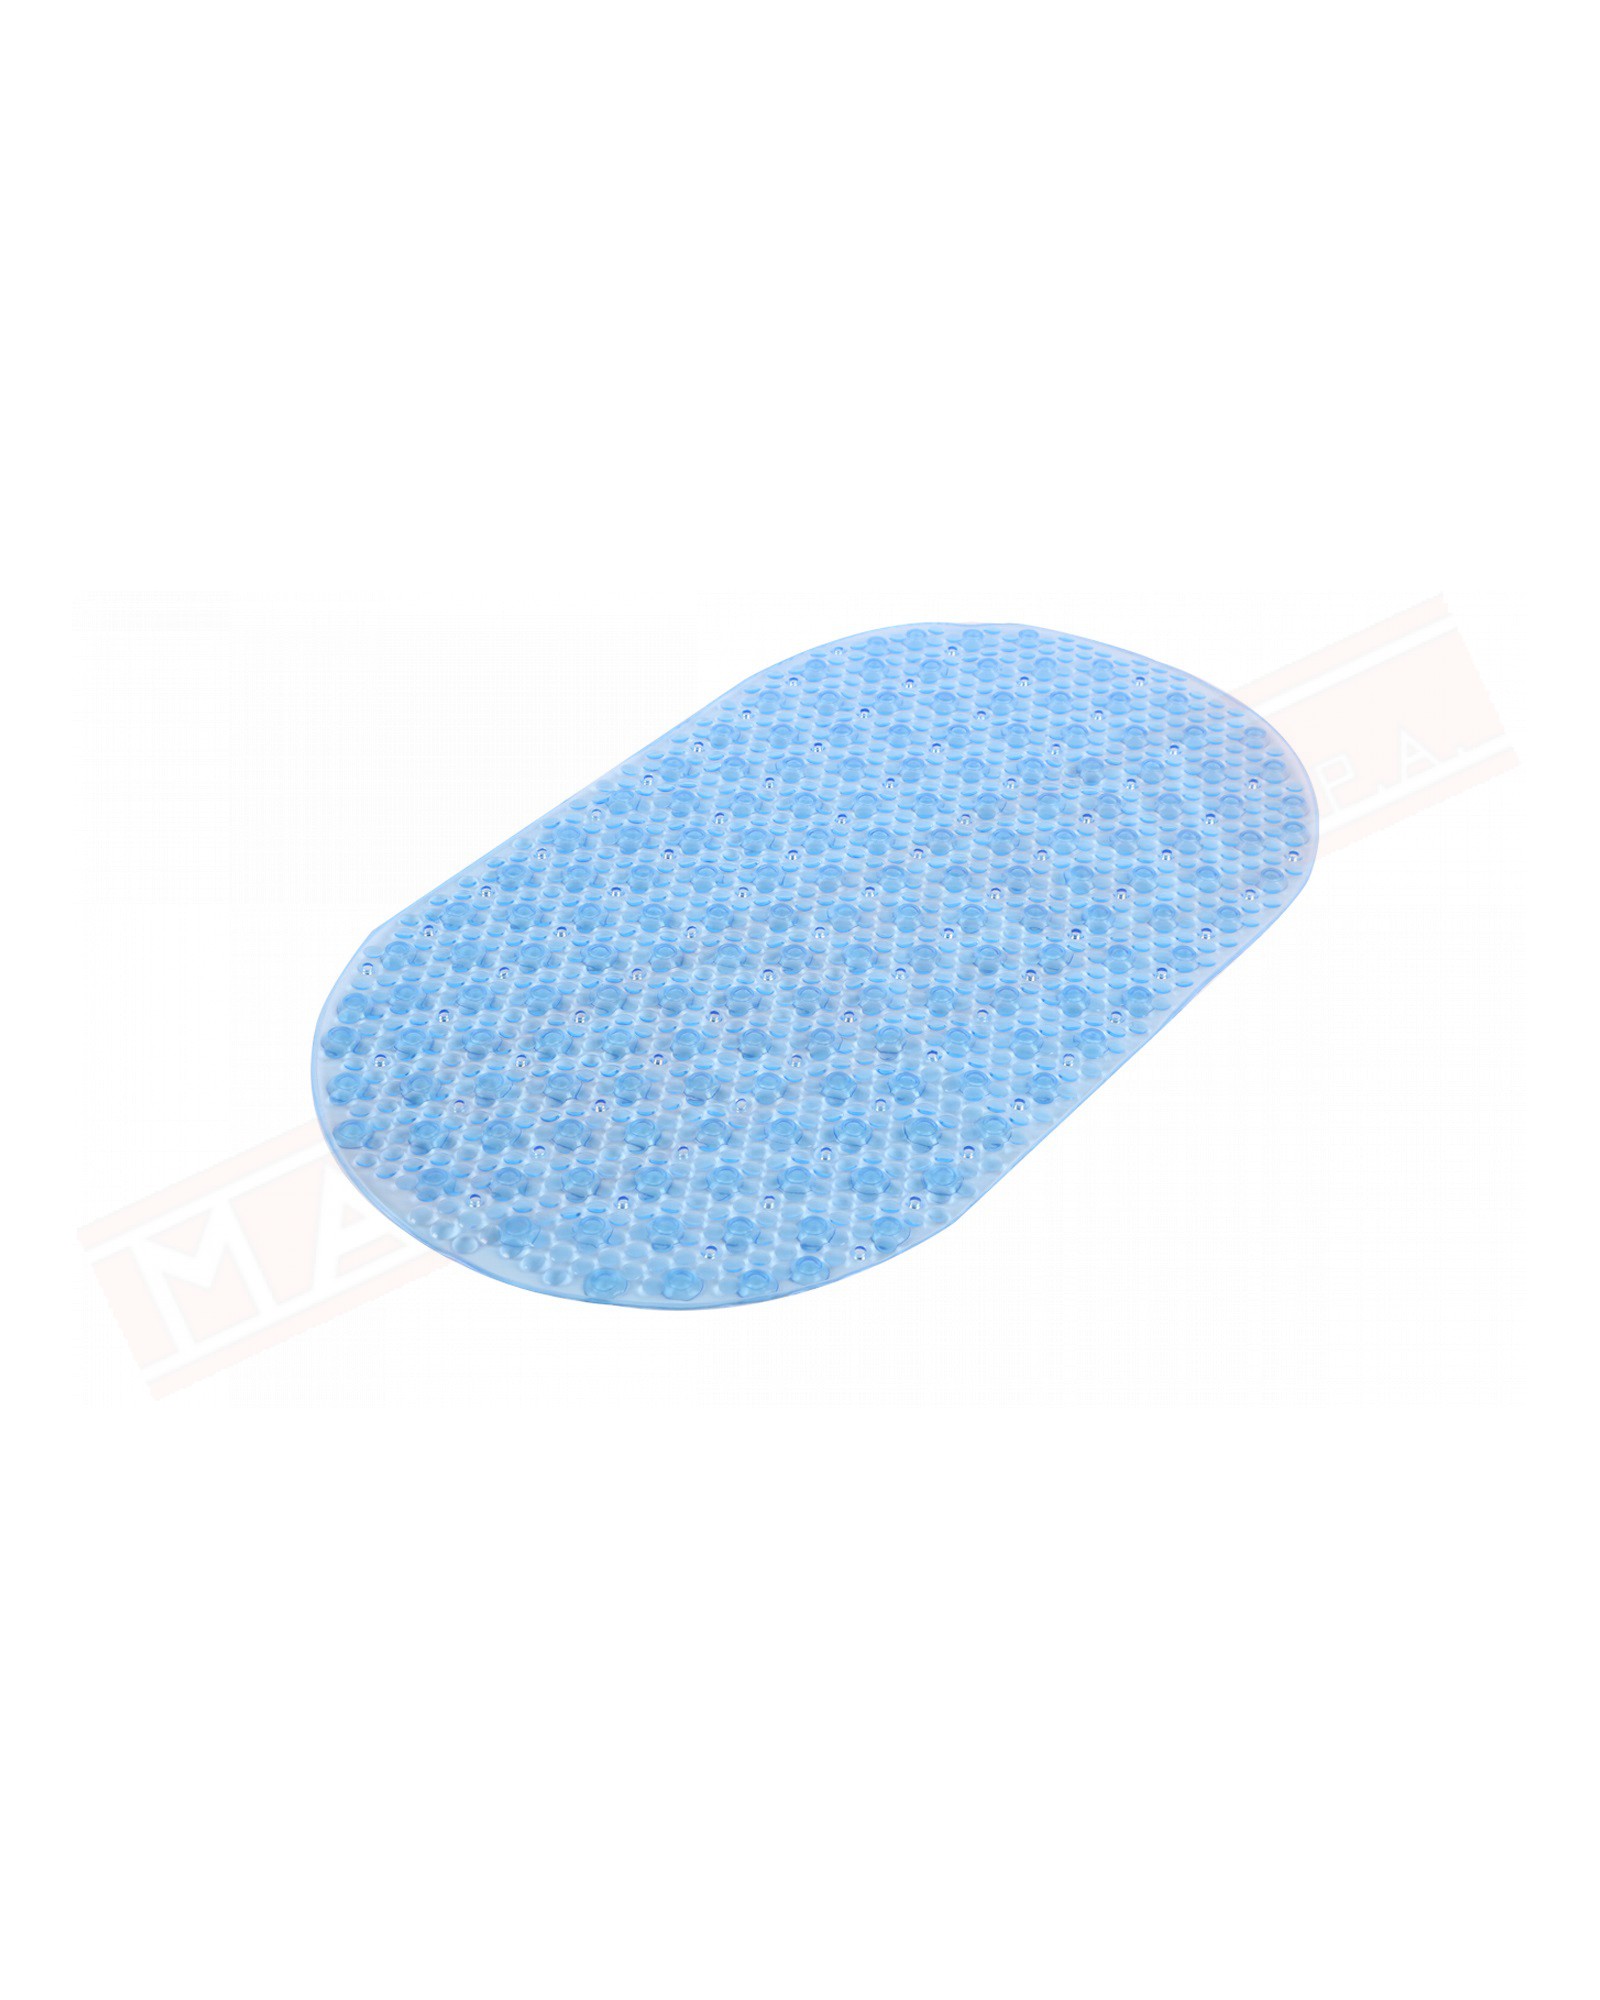 Gedy G.Solid tappeto antiscivolo per vasca in pvc trasparente azzurro misure art 69x38,5x0,7